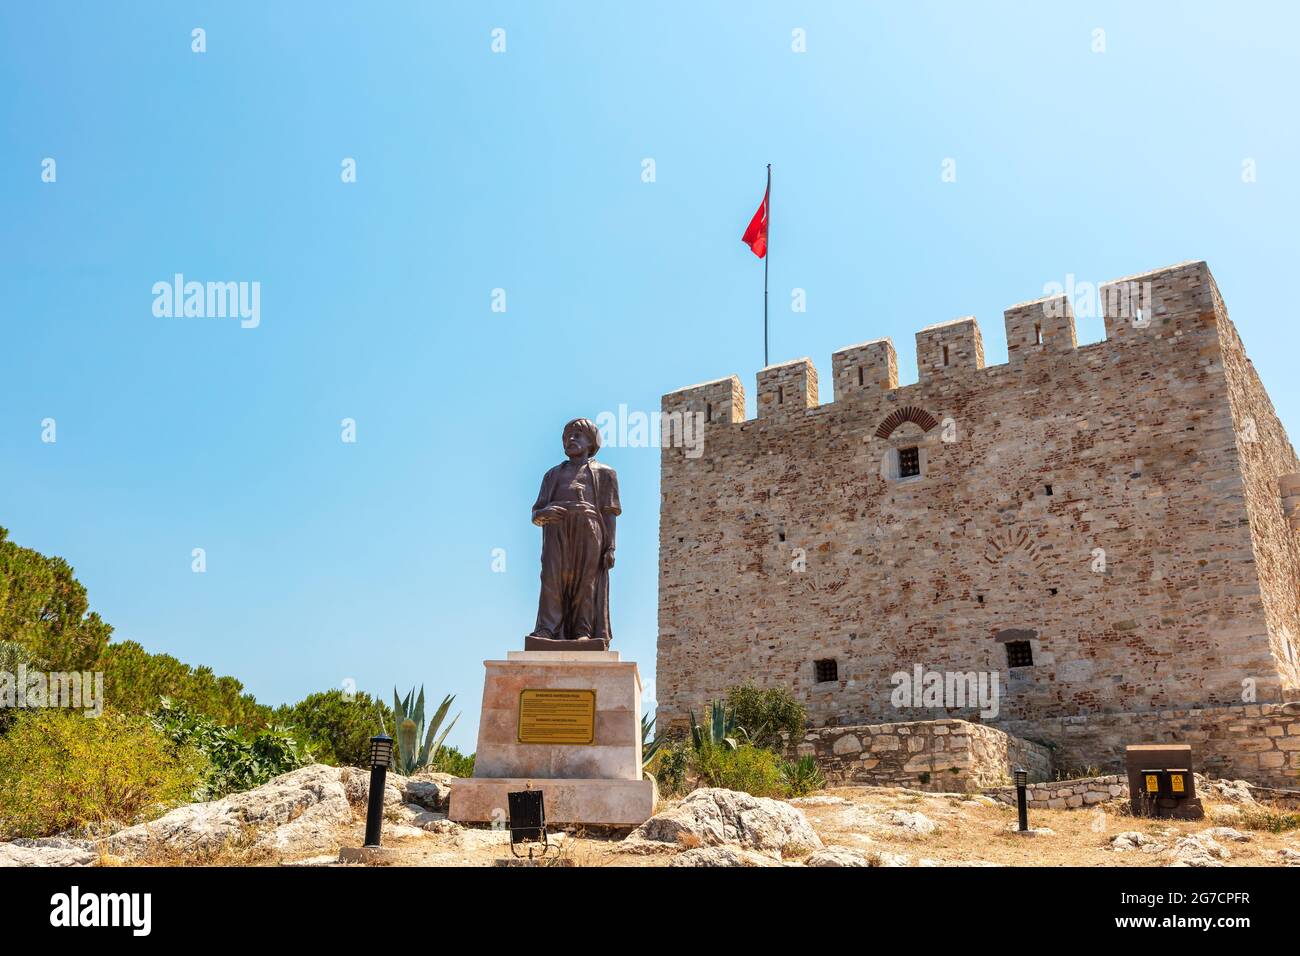 Statua di Barbaros Hayreddin Pasha o Hayreddin Barbarossa di fronte al castello di Pirate sull'isola di Pigeon a Kusadasi in Turchia. Foto Stock